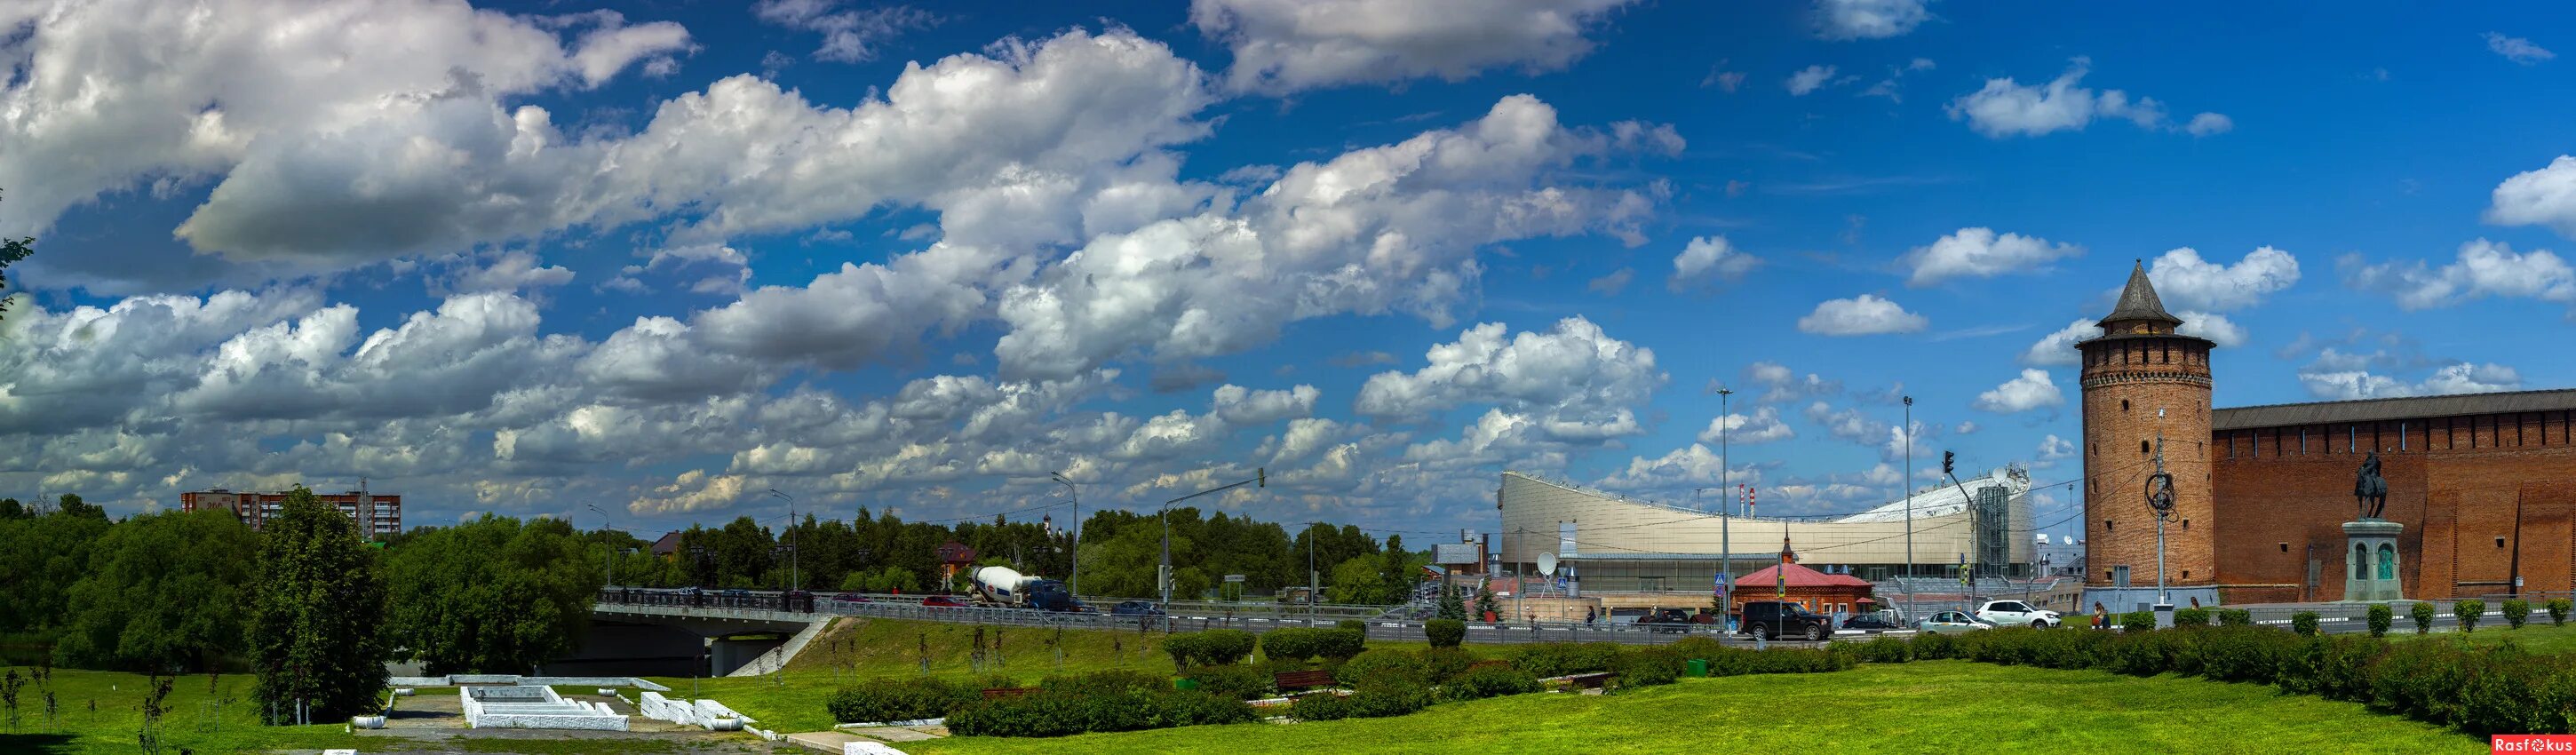 Панорама нова. Коломенский Кремль панорама. Кремль Коломна панорамный снимок. Панорама Коломны сверху. Коломна панорама красивая.